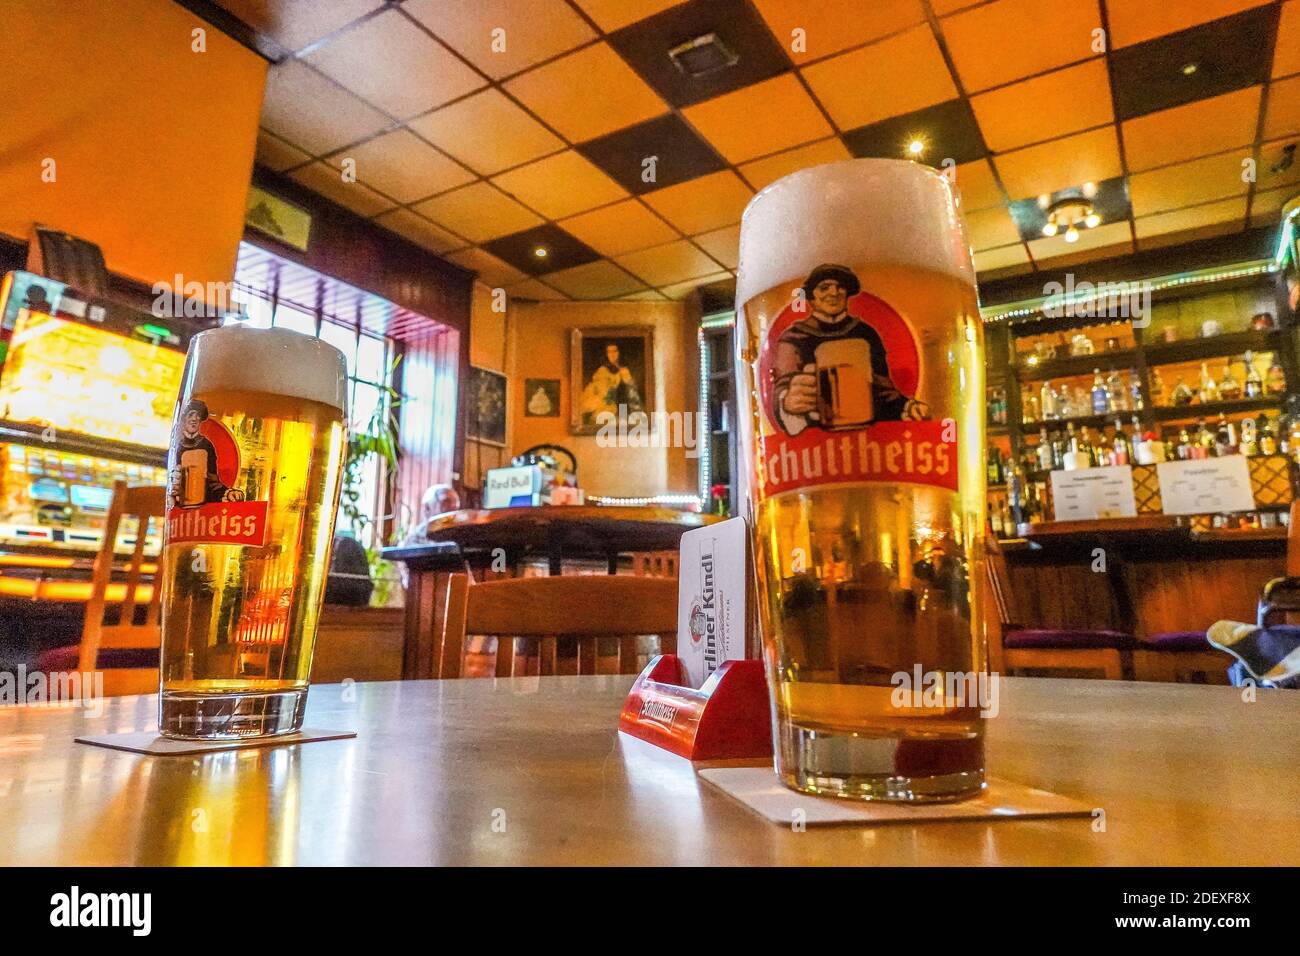 Schultheiss Bier, Kneipe 'Zum Magendoktor', Reinickendorfer Straße, Wedding, Mitte, Berlin, Deutschland Stockfoto